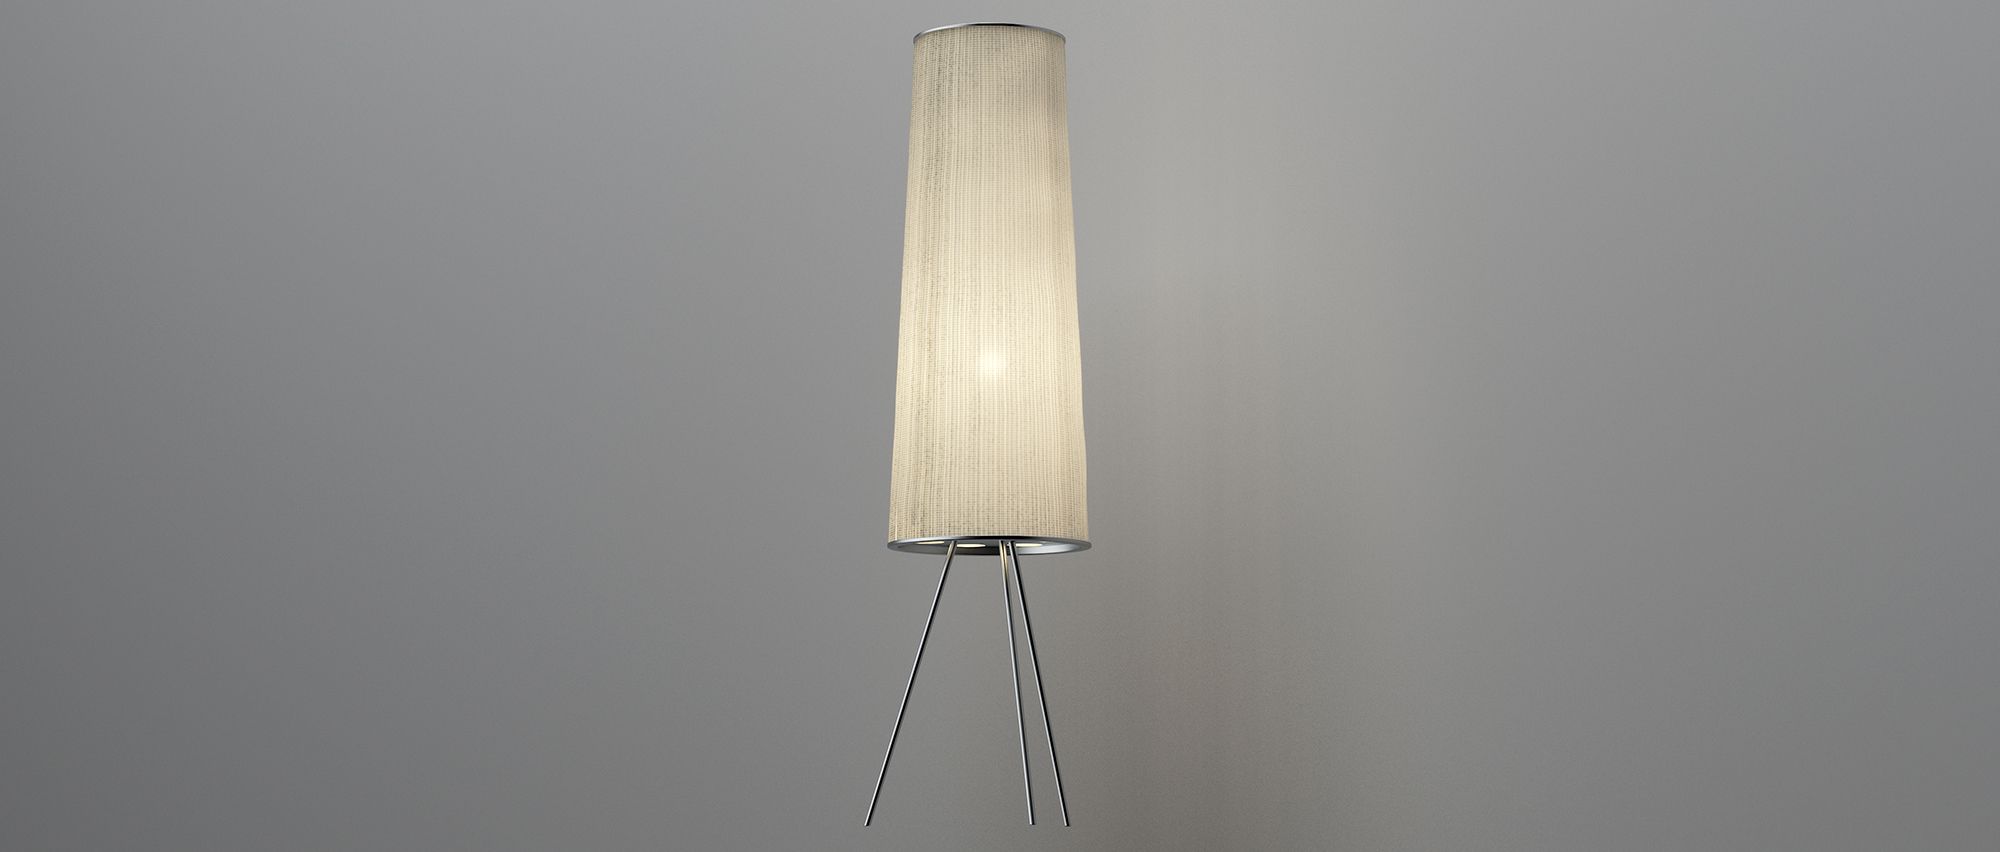 Catálogo Lámparas 3D Arturo